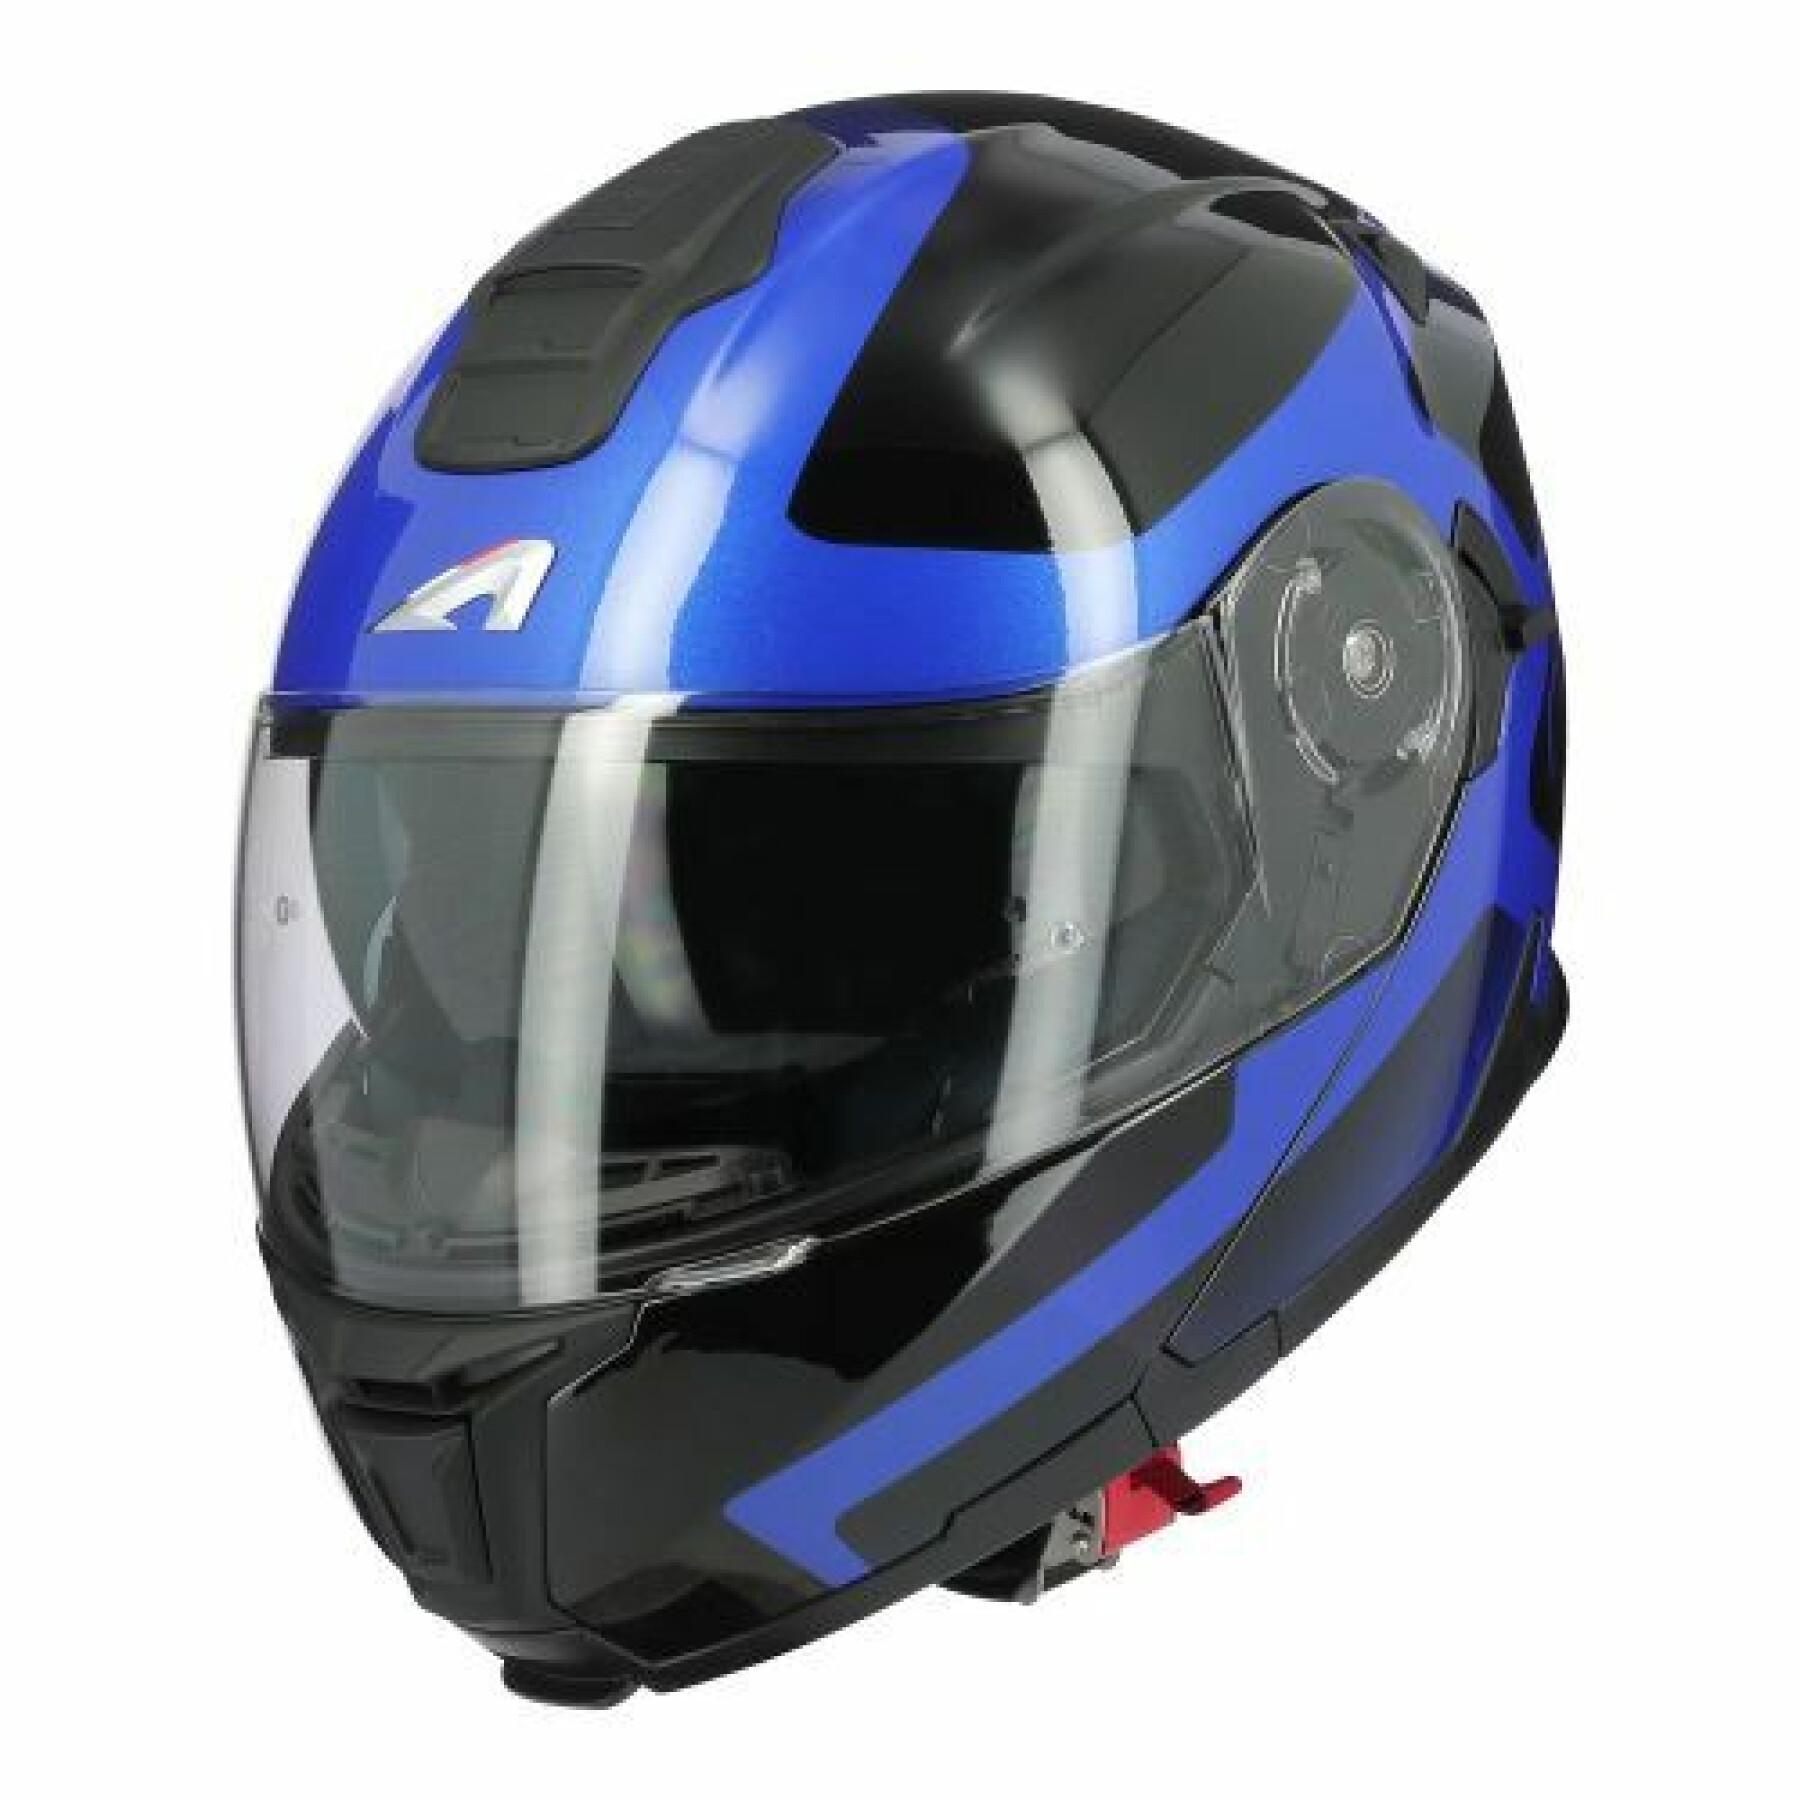 Modułowy kask motocyklowy Astone Rt1200 Evo Astar